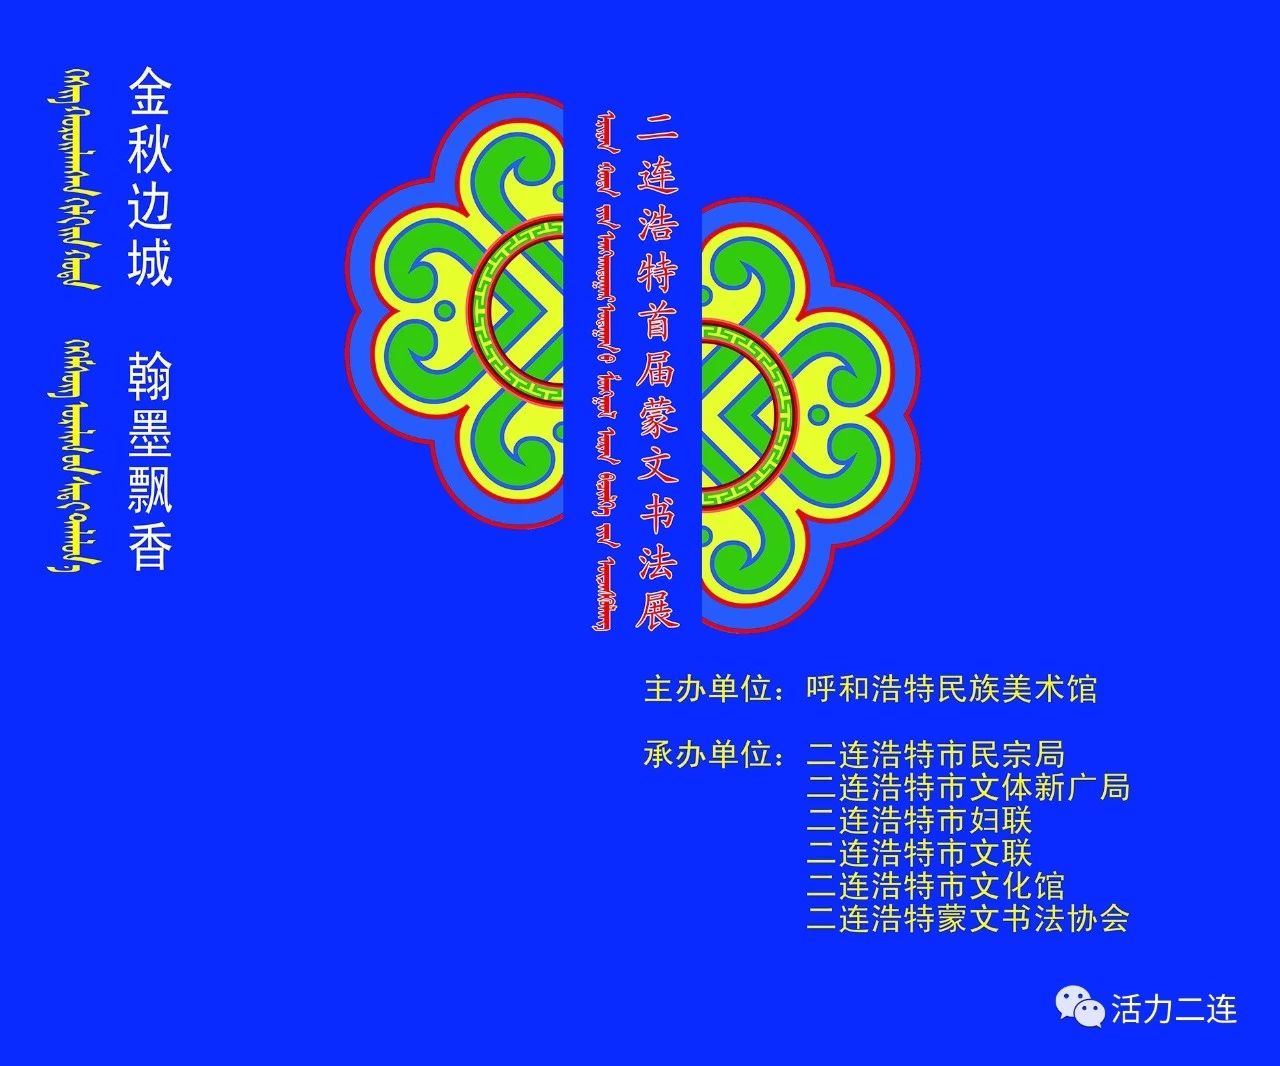 【庆祝改革开放40年】首届蒙古文书法展28日开展！